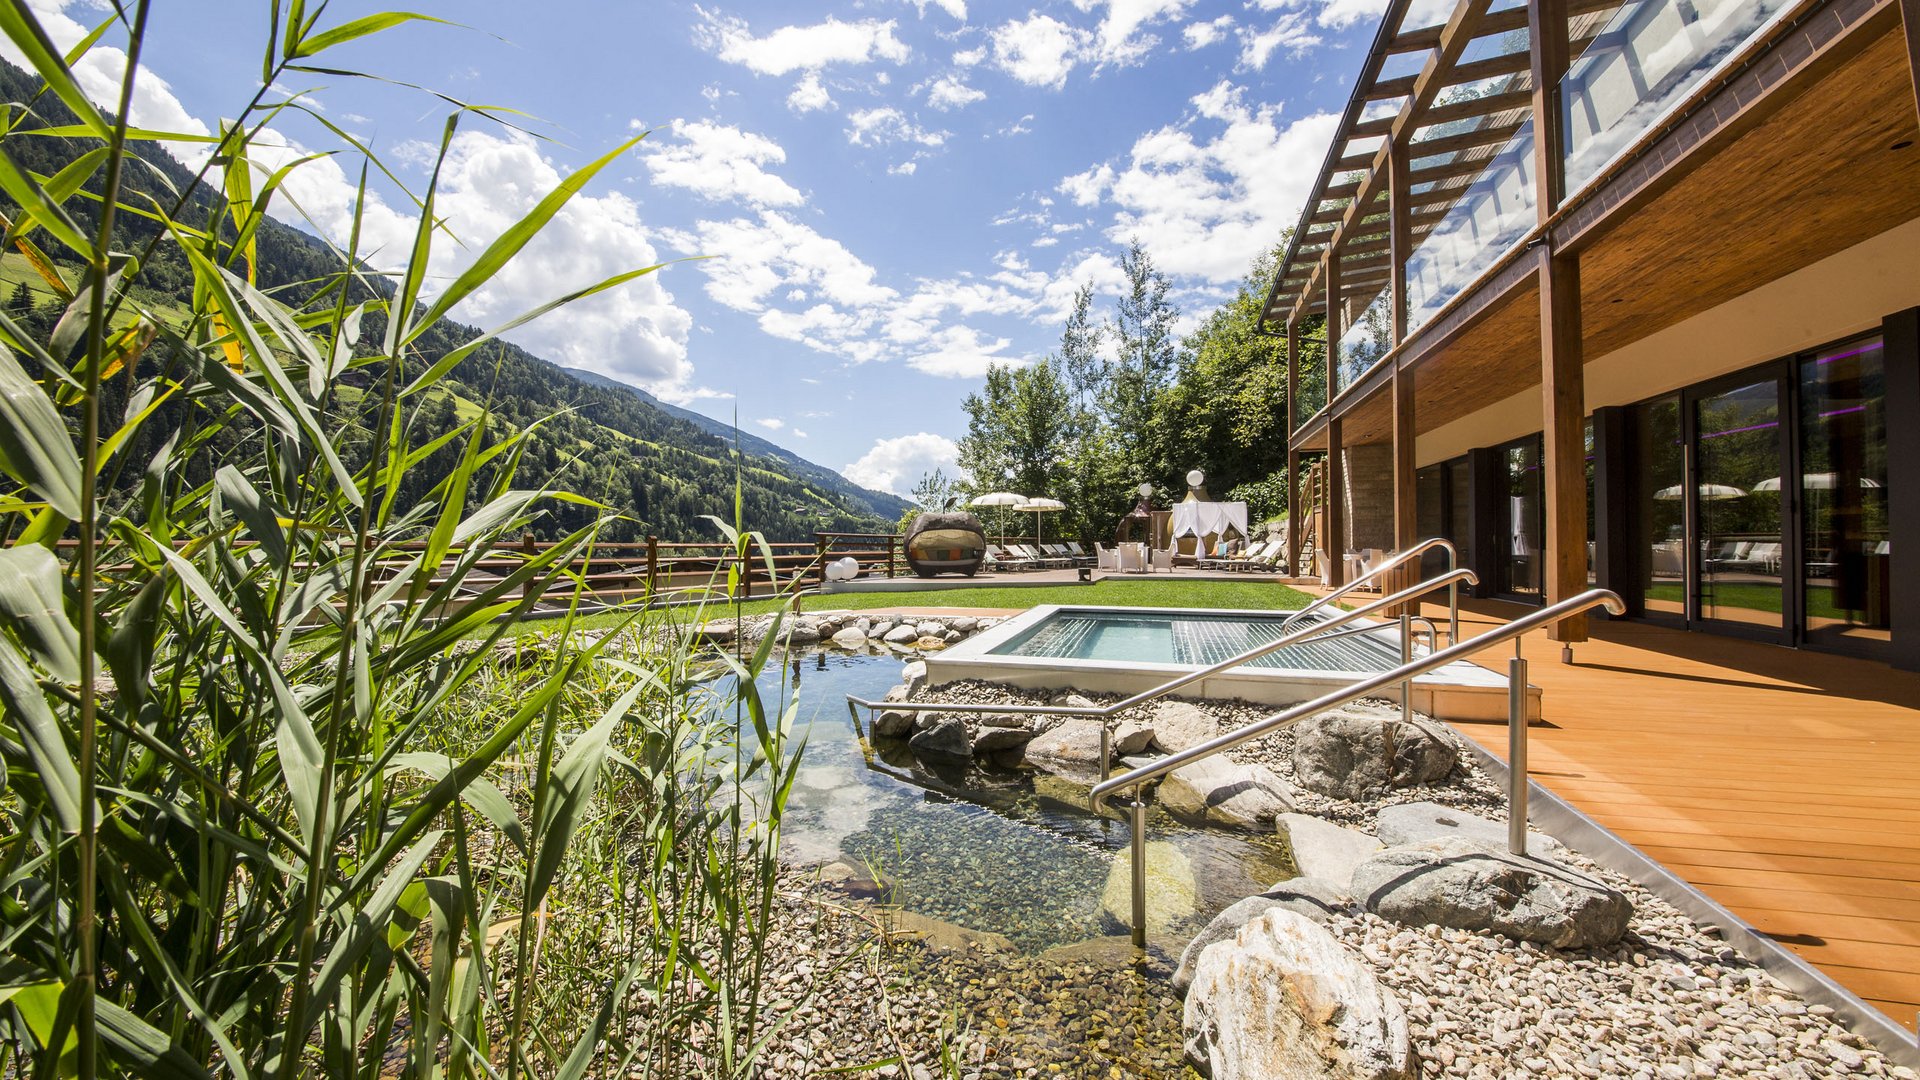 Abschalten und genießen im Wellnesshotel in Südtirol